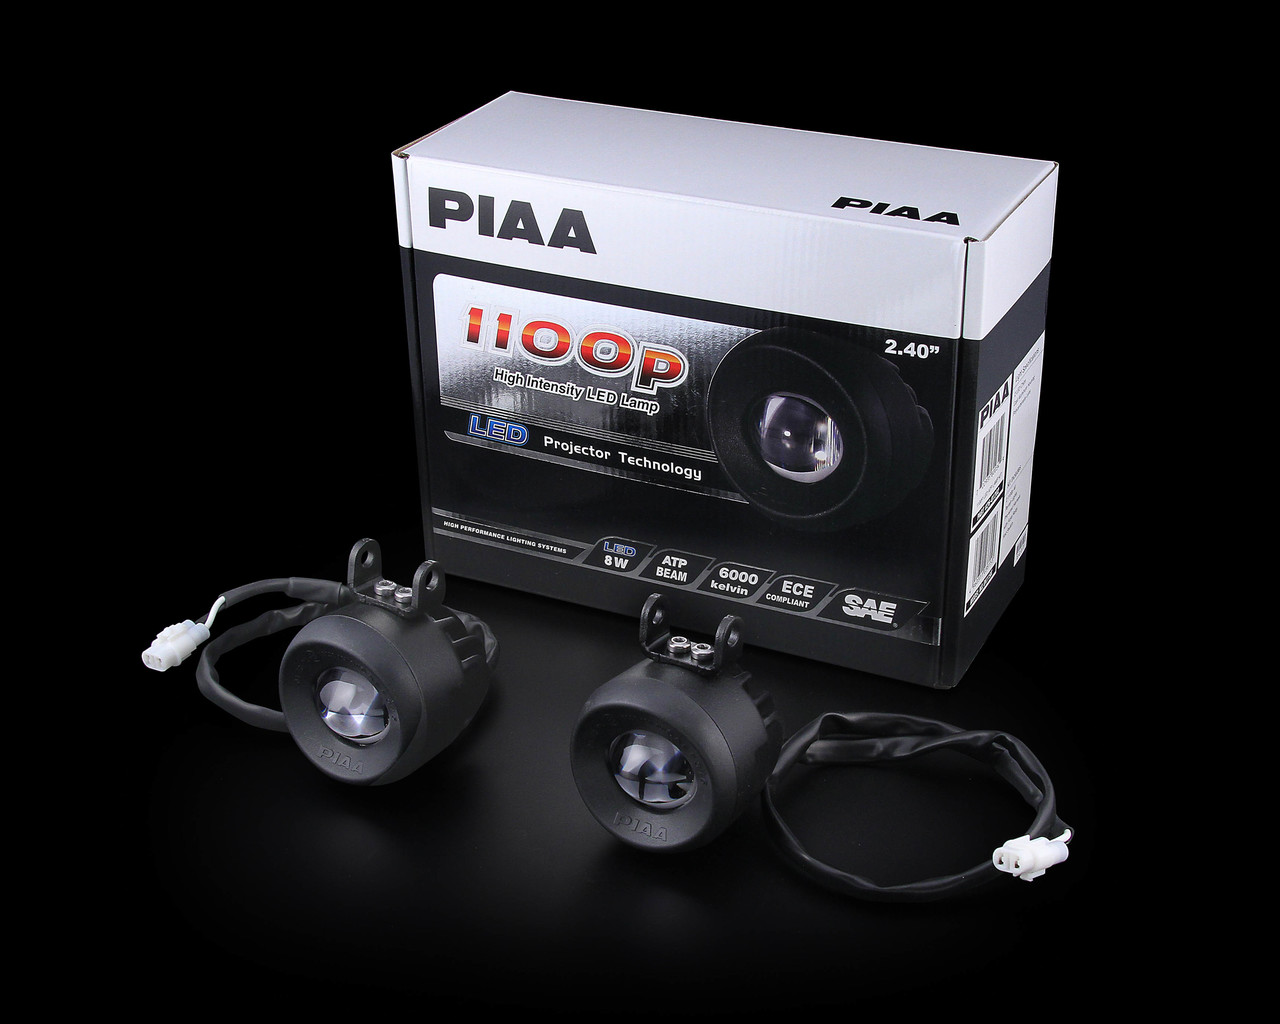 PIAA-1100P 안개등 (구조변경 가능)